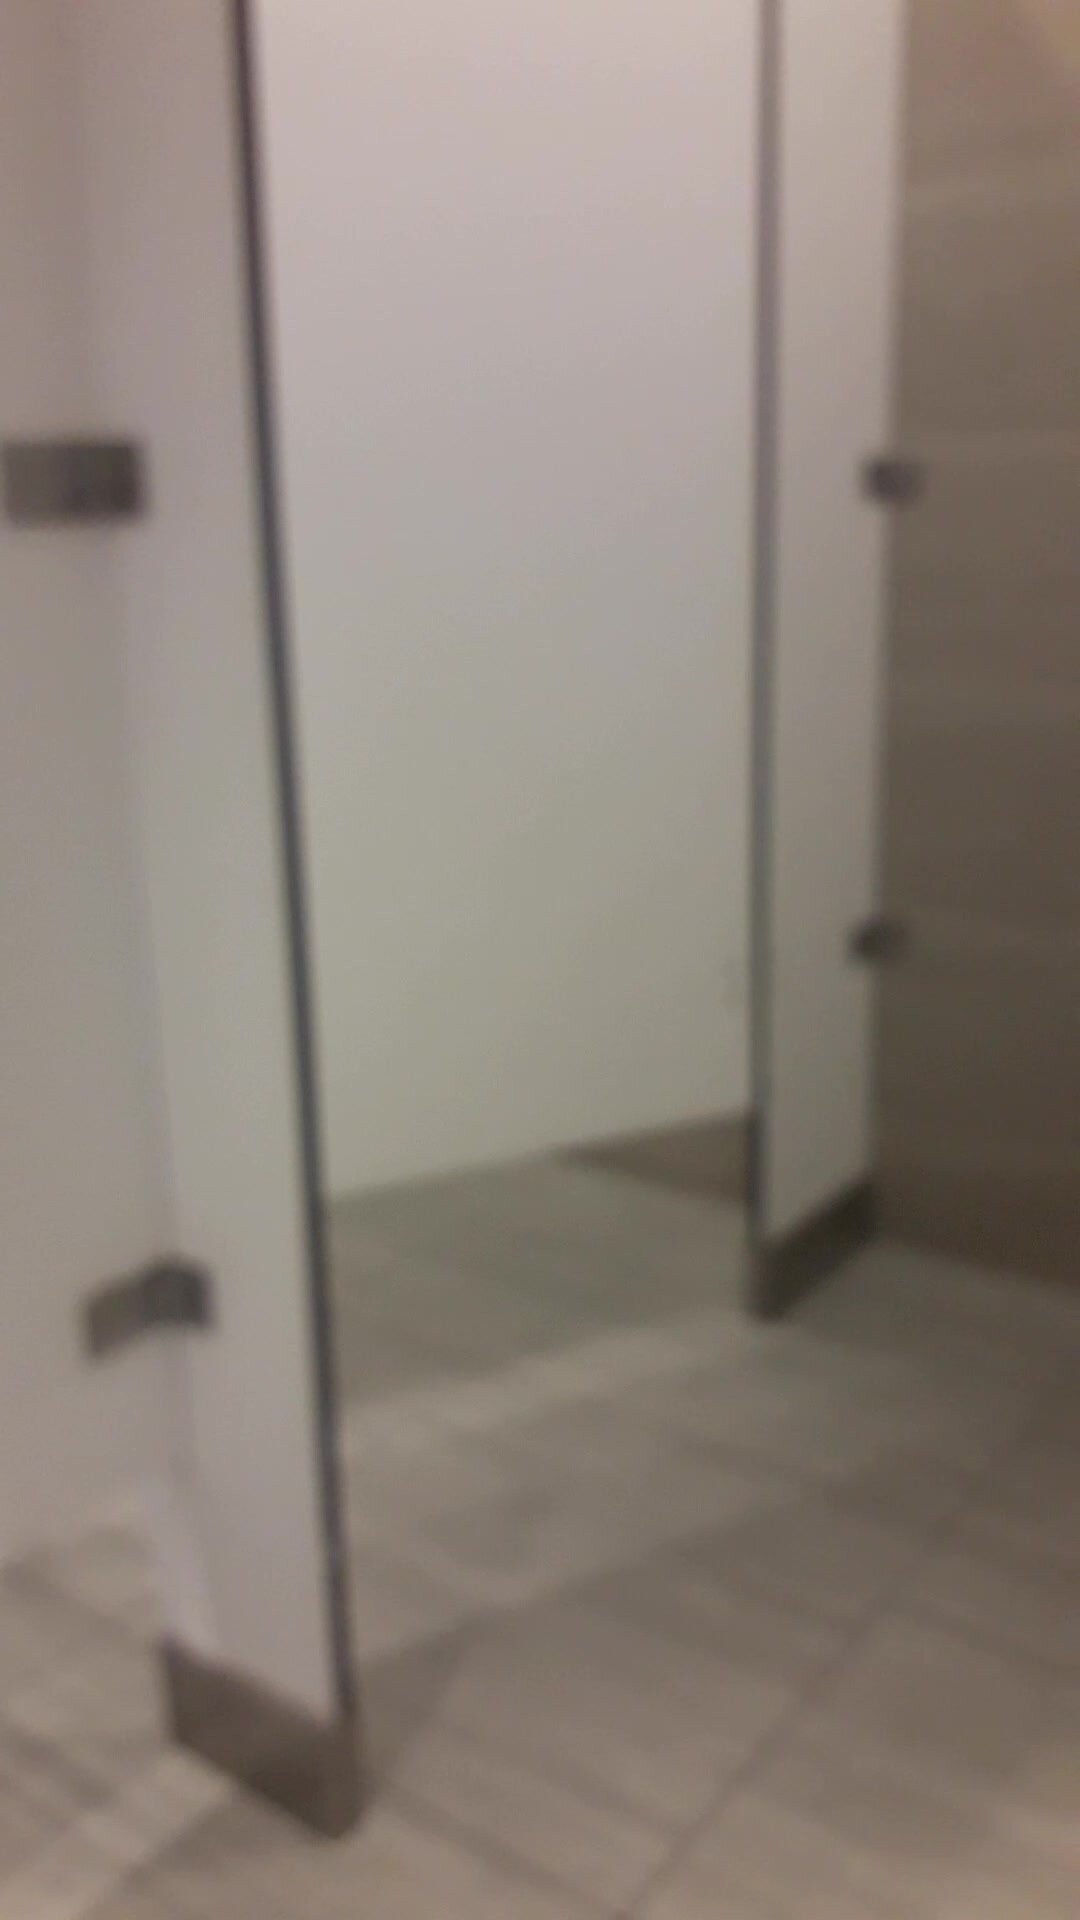 Strangers Opened The Public Toilet Door - video 7